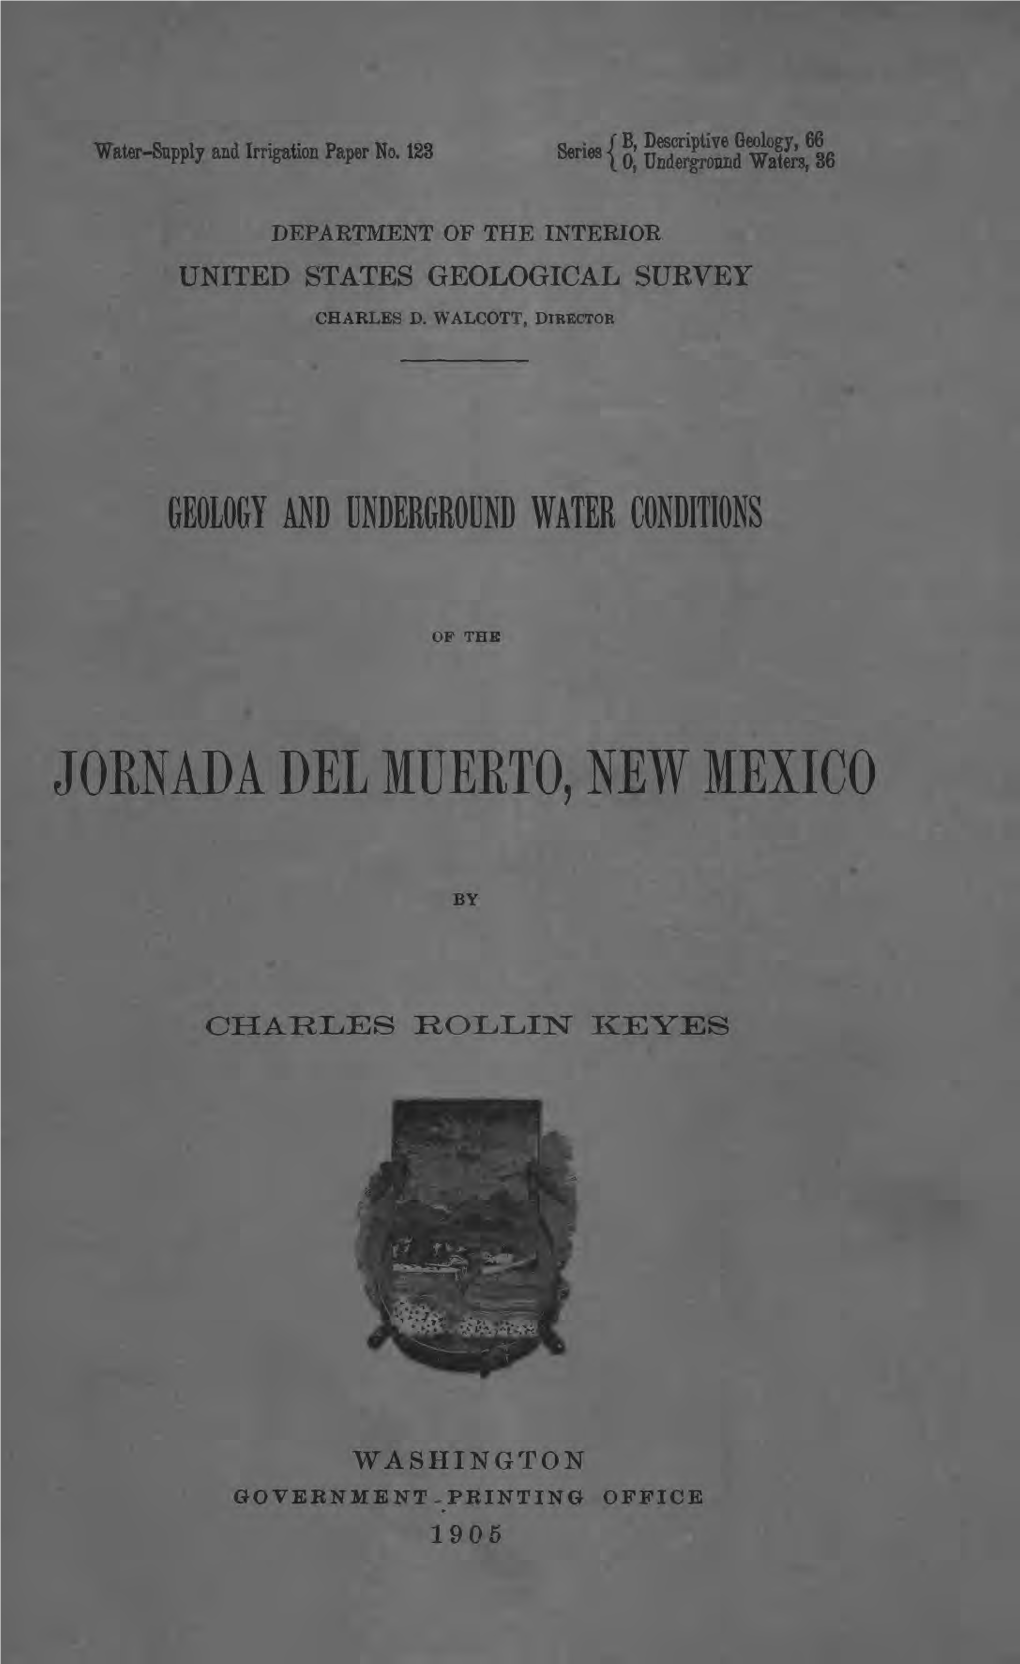 Joenada Del Muerto, New Mexico